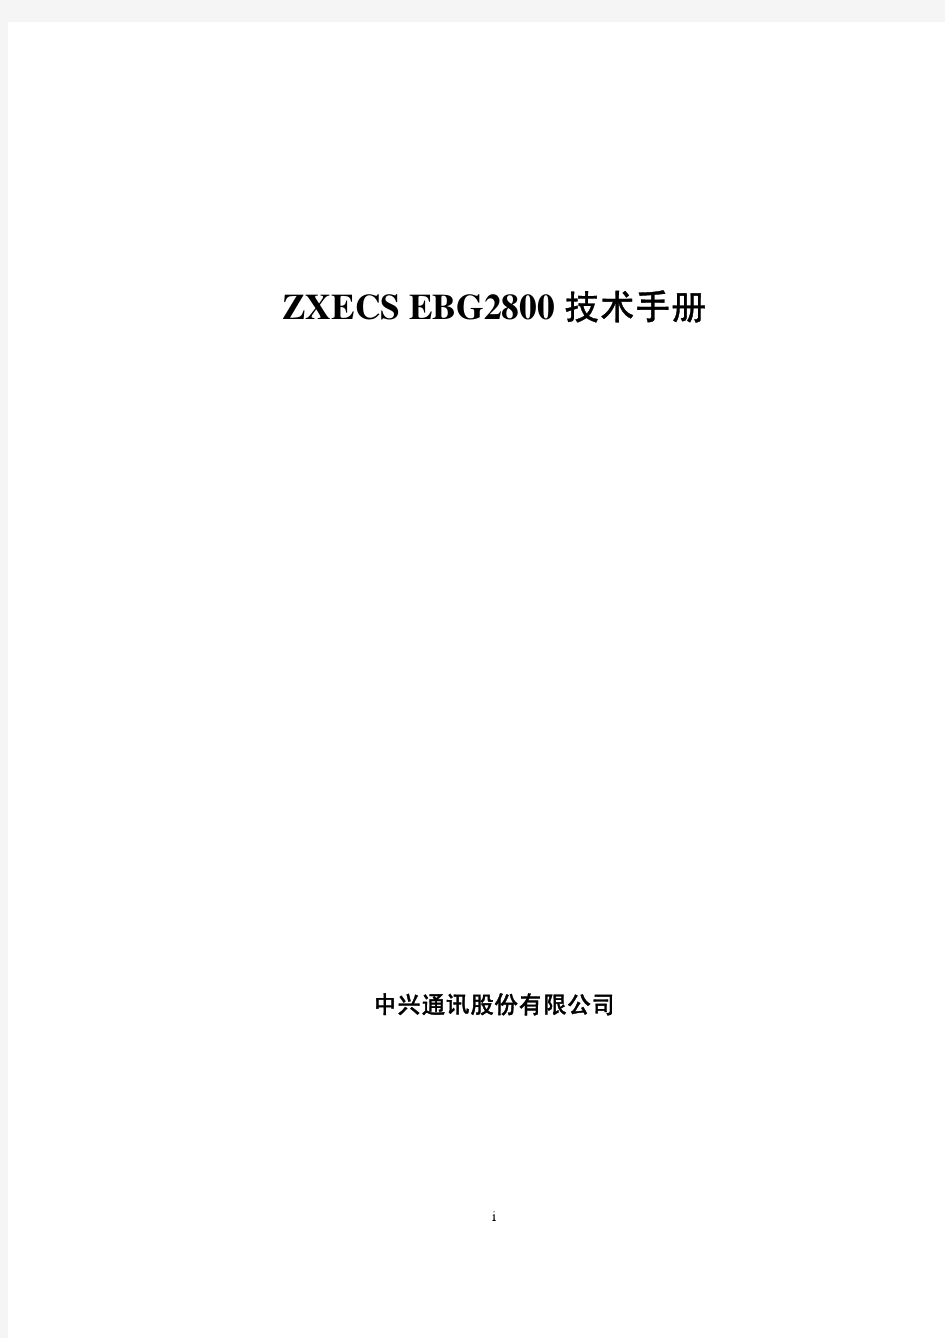 ZXECS EBG2800 技术手册 V1.2